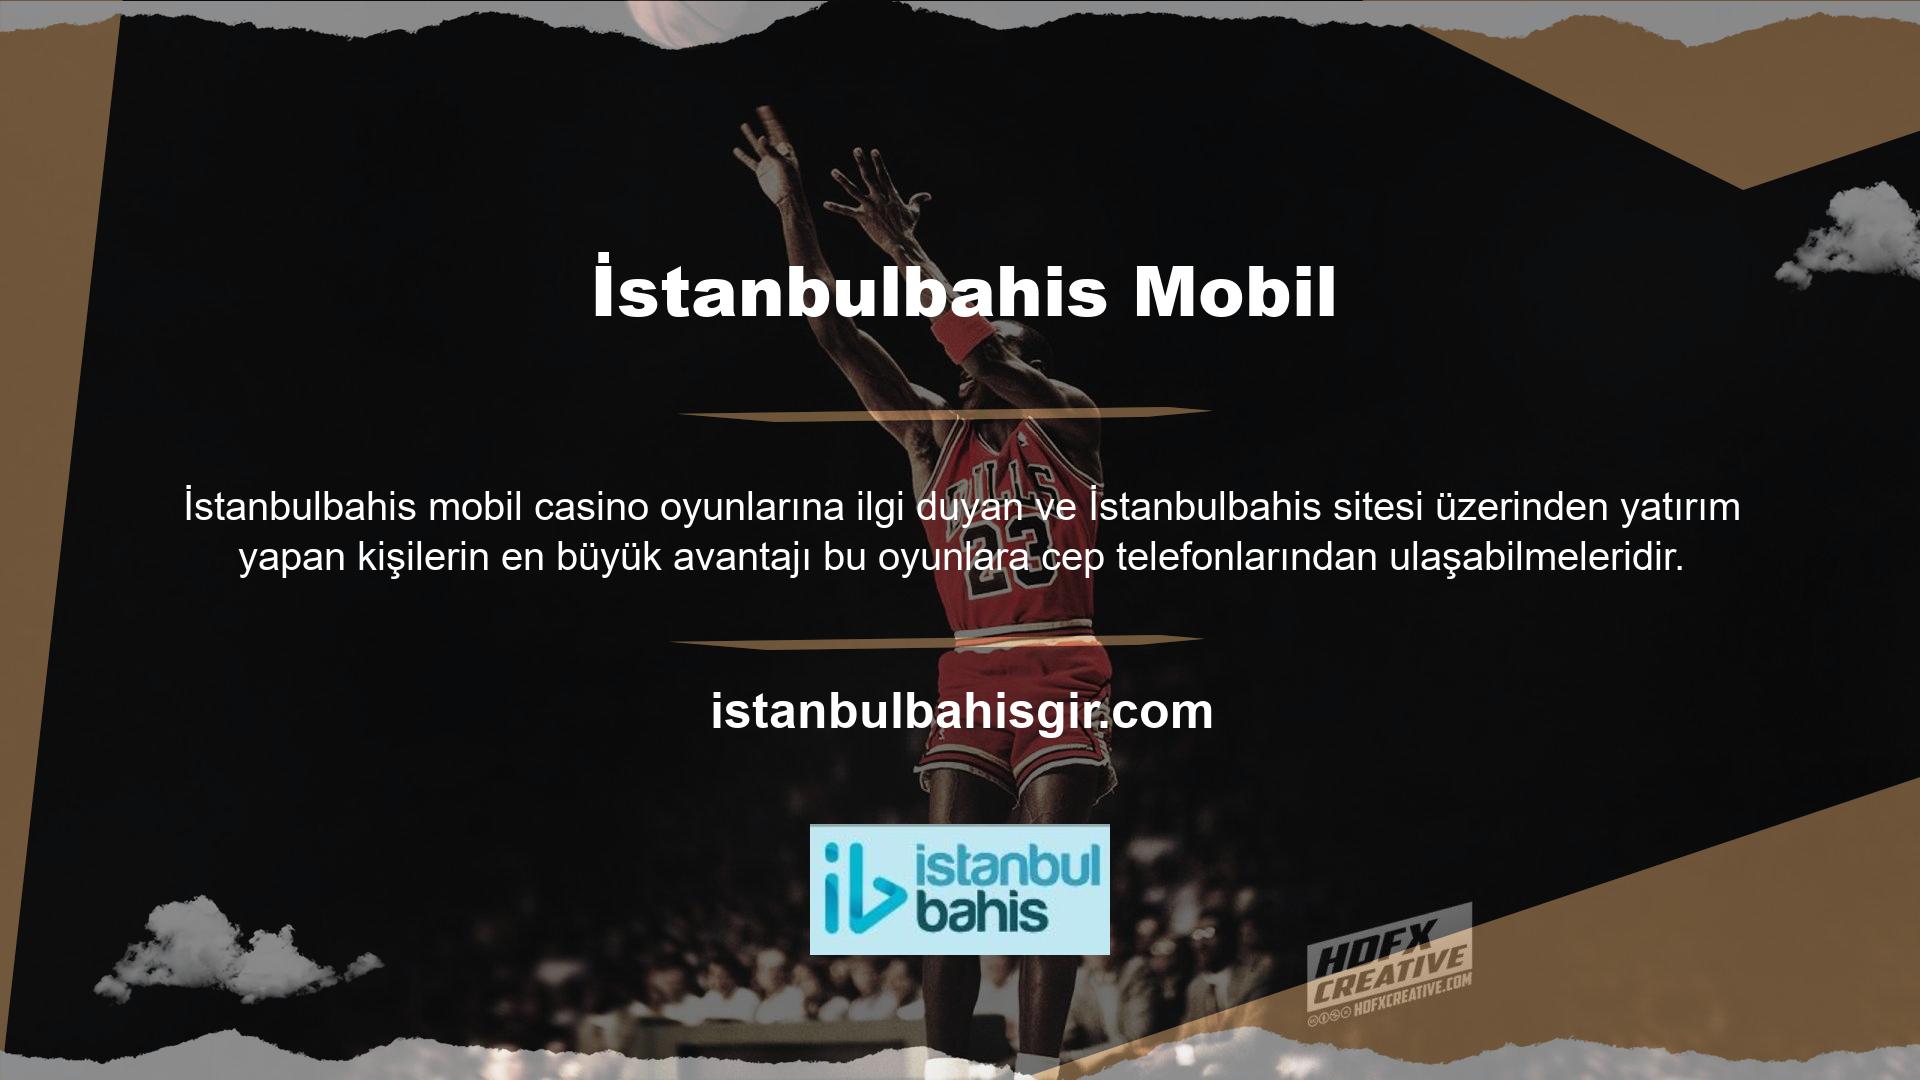 İstanbulbahis, çevrimiçi alanın her alanında en iyi altyapılardan birine sahiptir